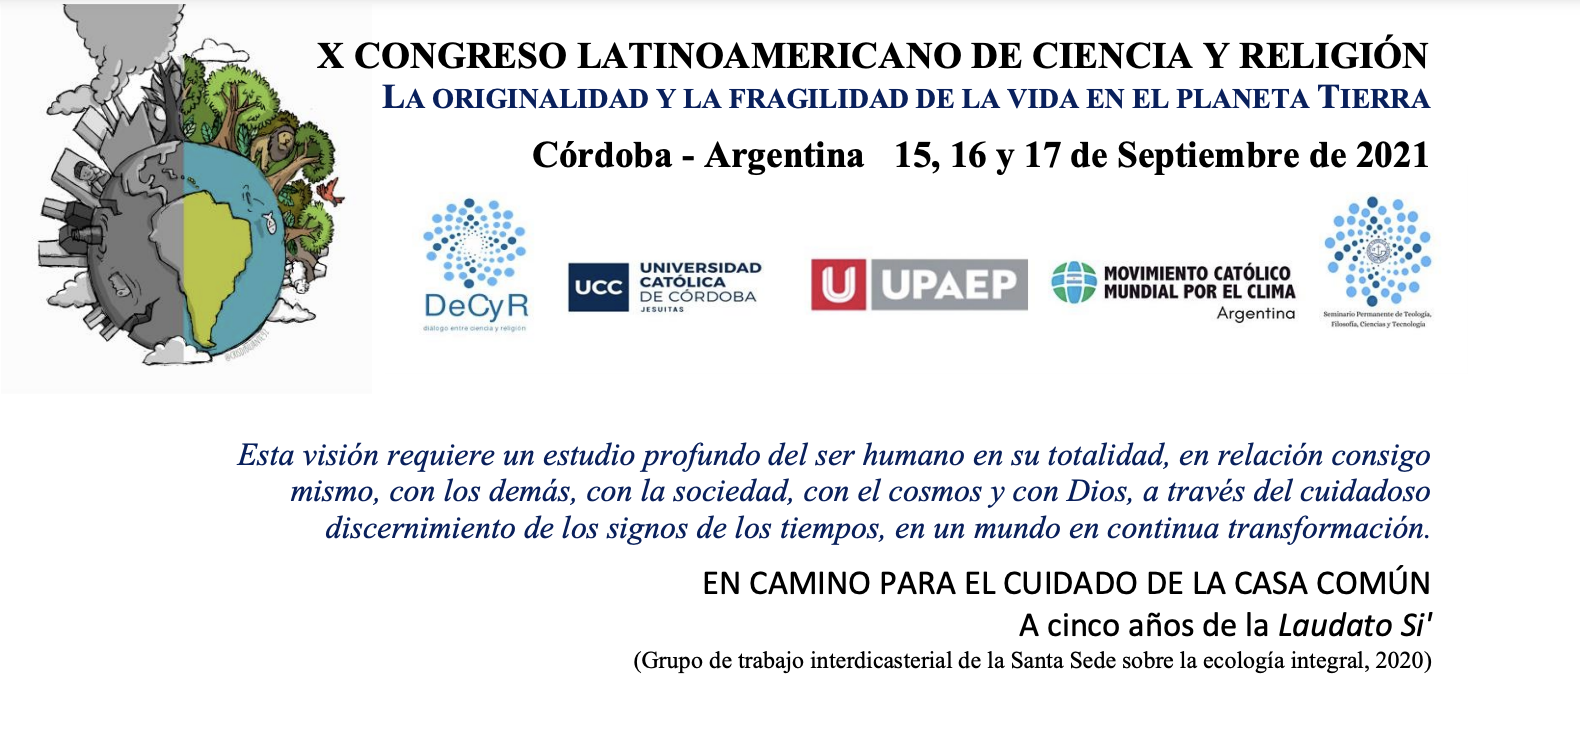 X Congreso Latinoamericano de Ciencia y Religión la Originalidad y la Fragilidad de la Vida en el Planeta Tierra